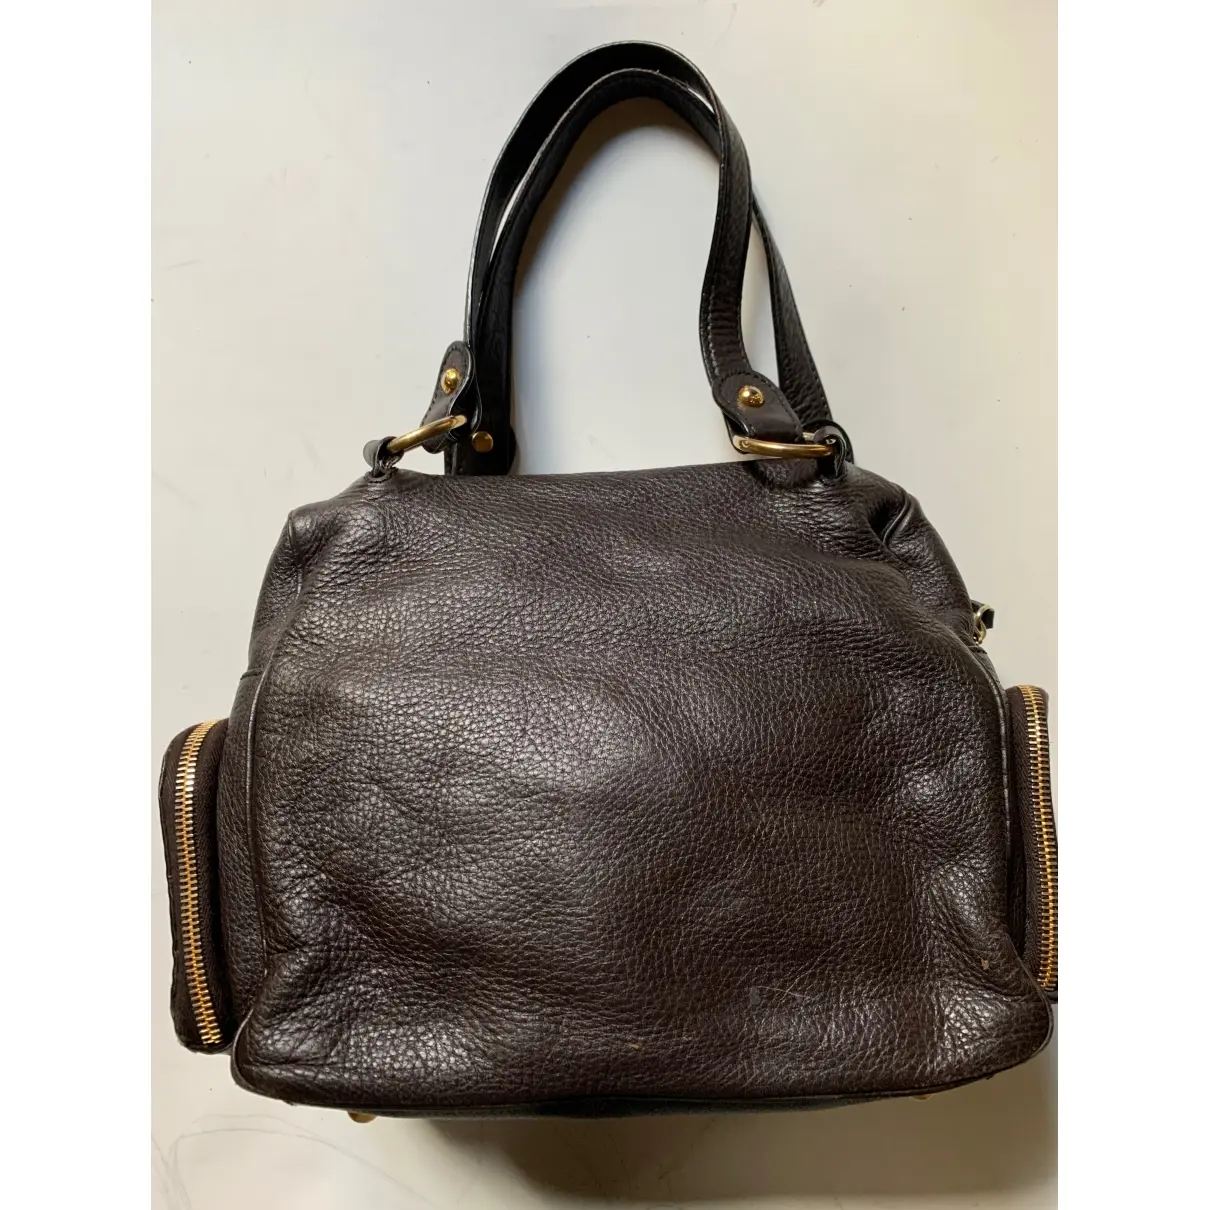 Tod's Leather handbag for sale - Vintage